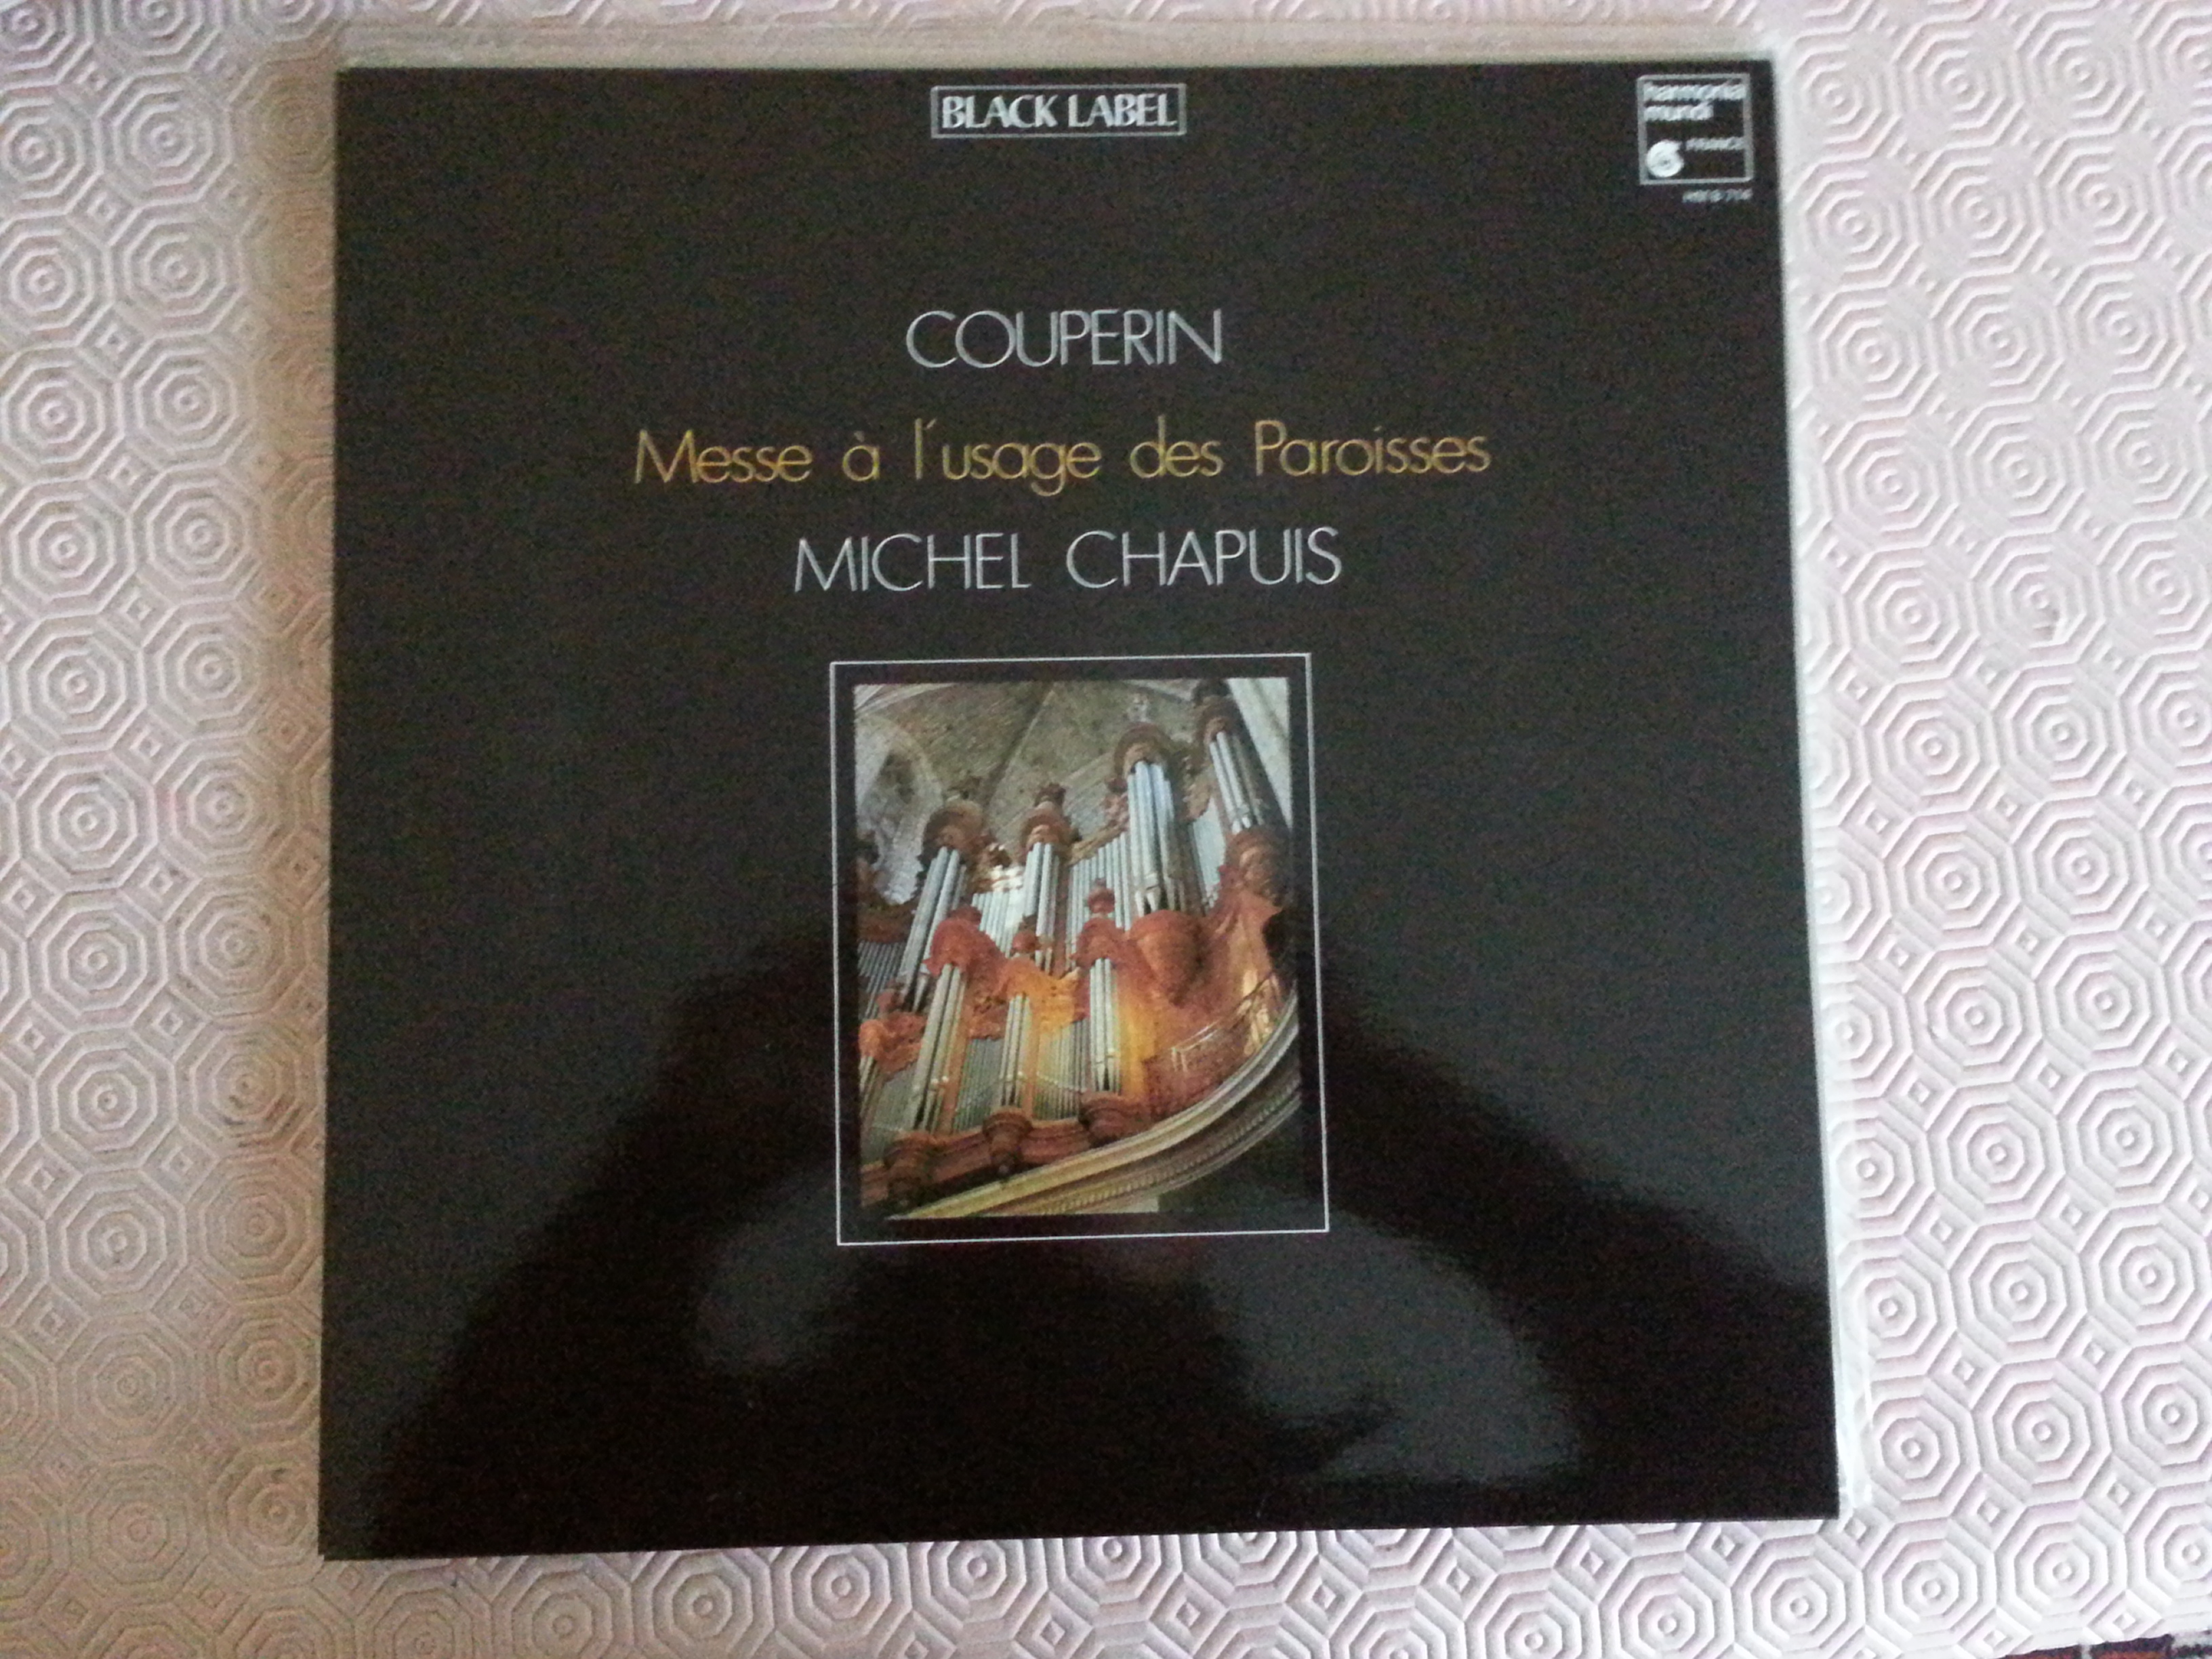 Acheter disque vinyle François Couperin Messe à l'usage des paroisses a vendre